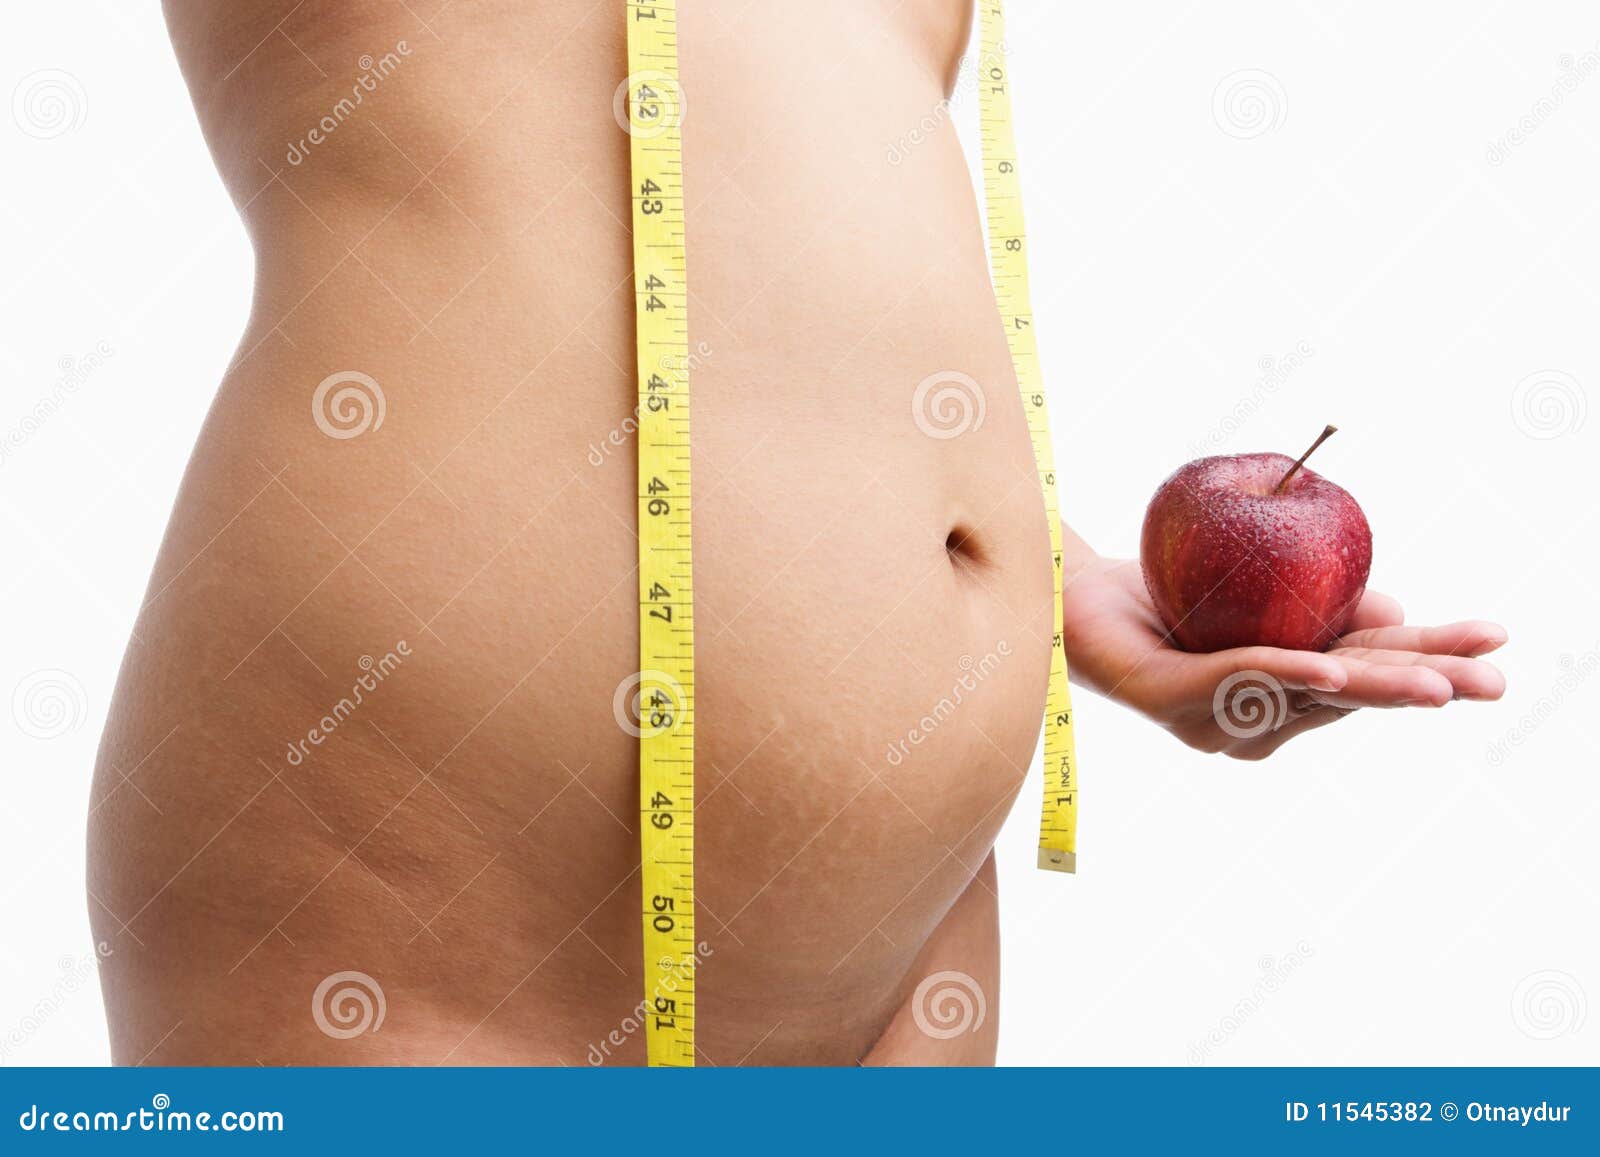 Растет вес и живот. Женский живот при лишнем весе. Излишек веса и живот у женщин. Лишний вес в районе живота.